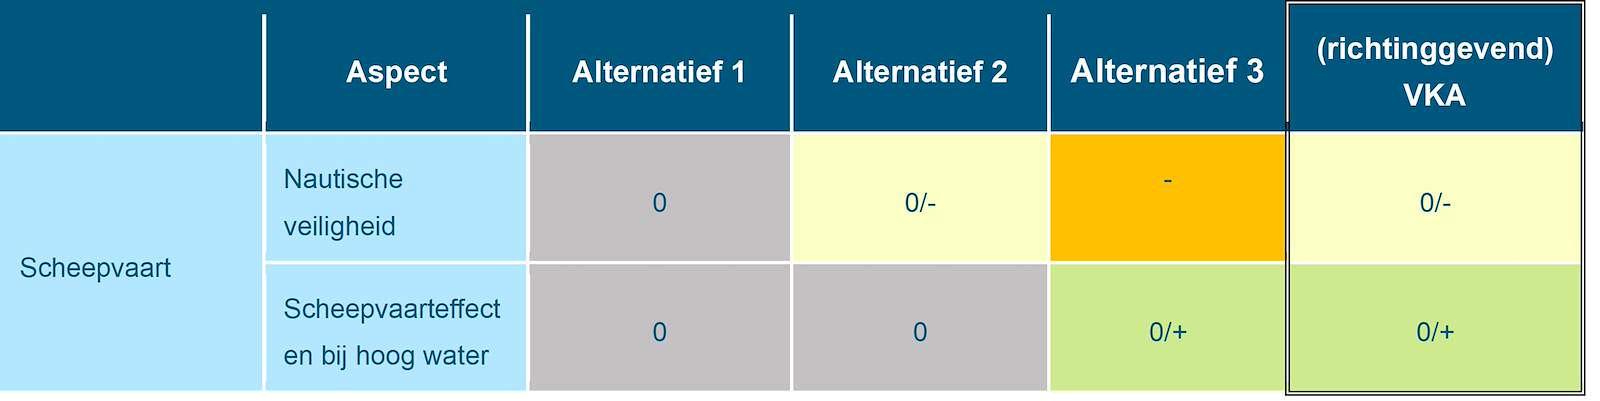 Deze tabel laat de totaalbeoordeling voor de milieueffecten van het beoordelingsaspect overige scheepvaart zien voor de Rijntakken, voor de drie alternatieven en het richtinggevend VKA. Deze beoordeling is toegelicht in de tekst voorafgaande aan de tabel.